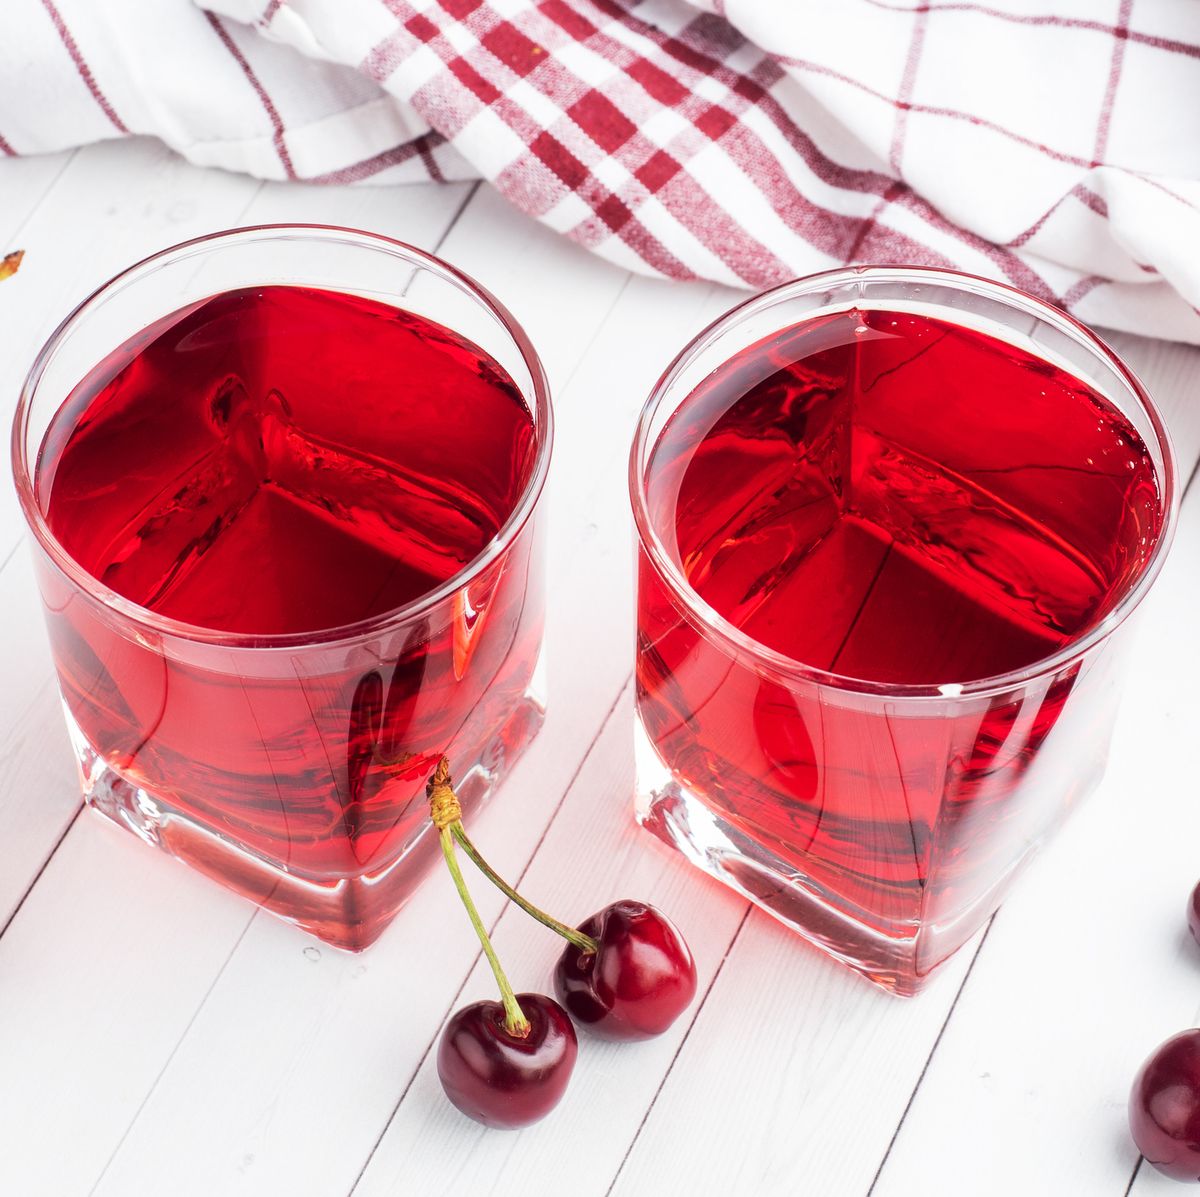 7 health benefits of tart cherry juice